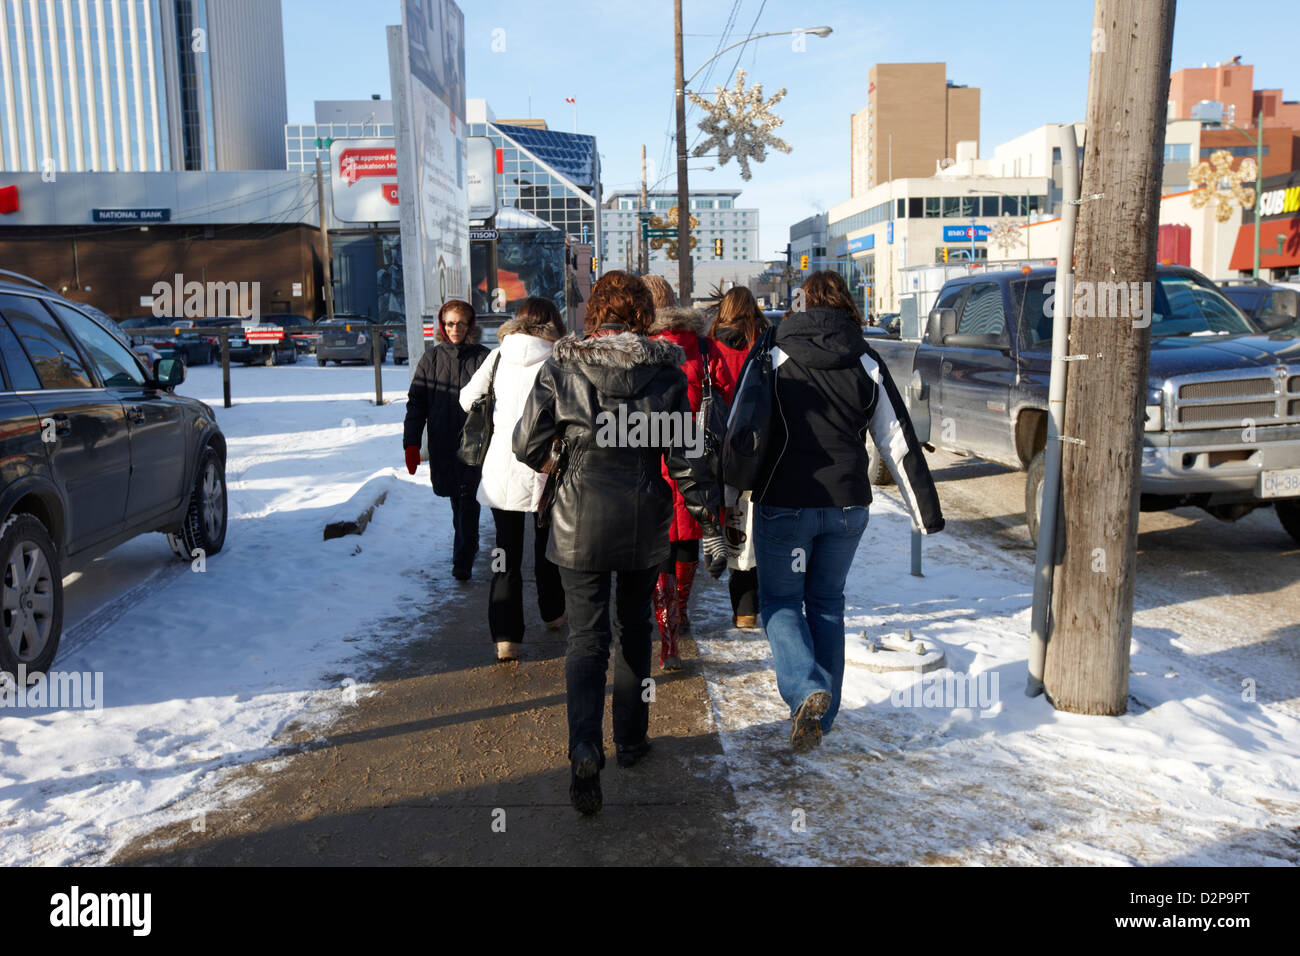 Frauen tragen Winterkleidung entlang kalter Schnee bedeckt Innenstadt  Straße Saskatoon Saskatchewan Kanada Stockfotografie - Alamy